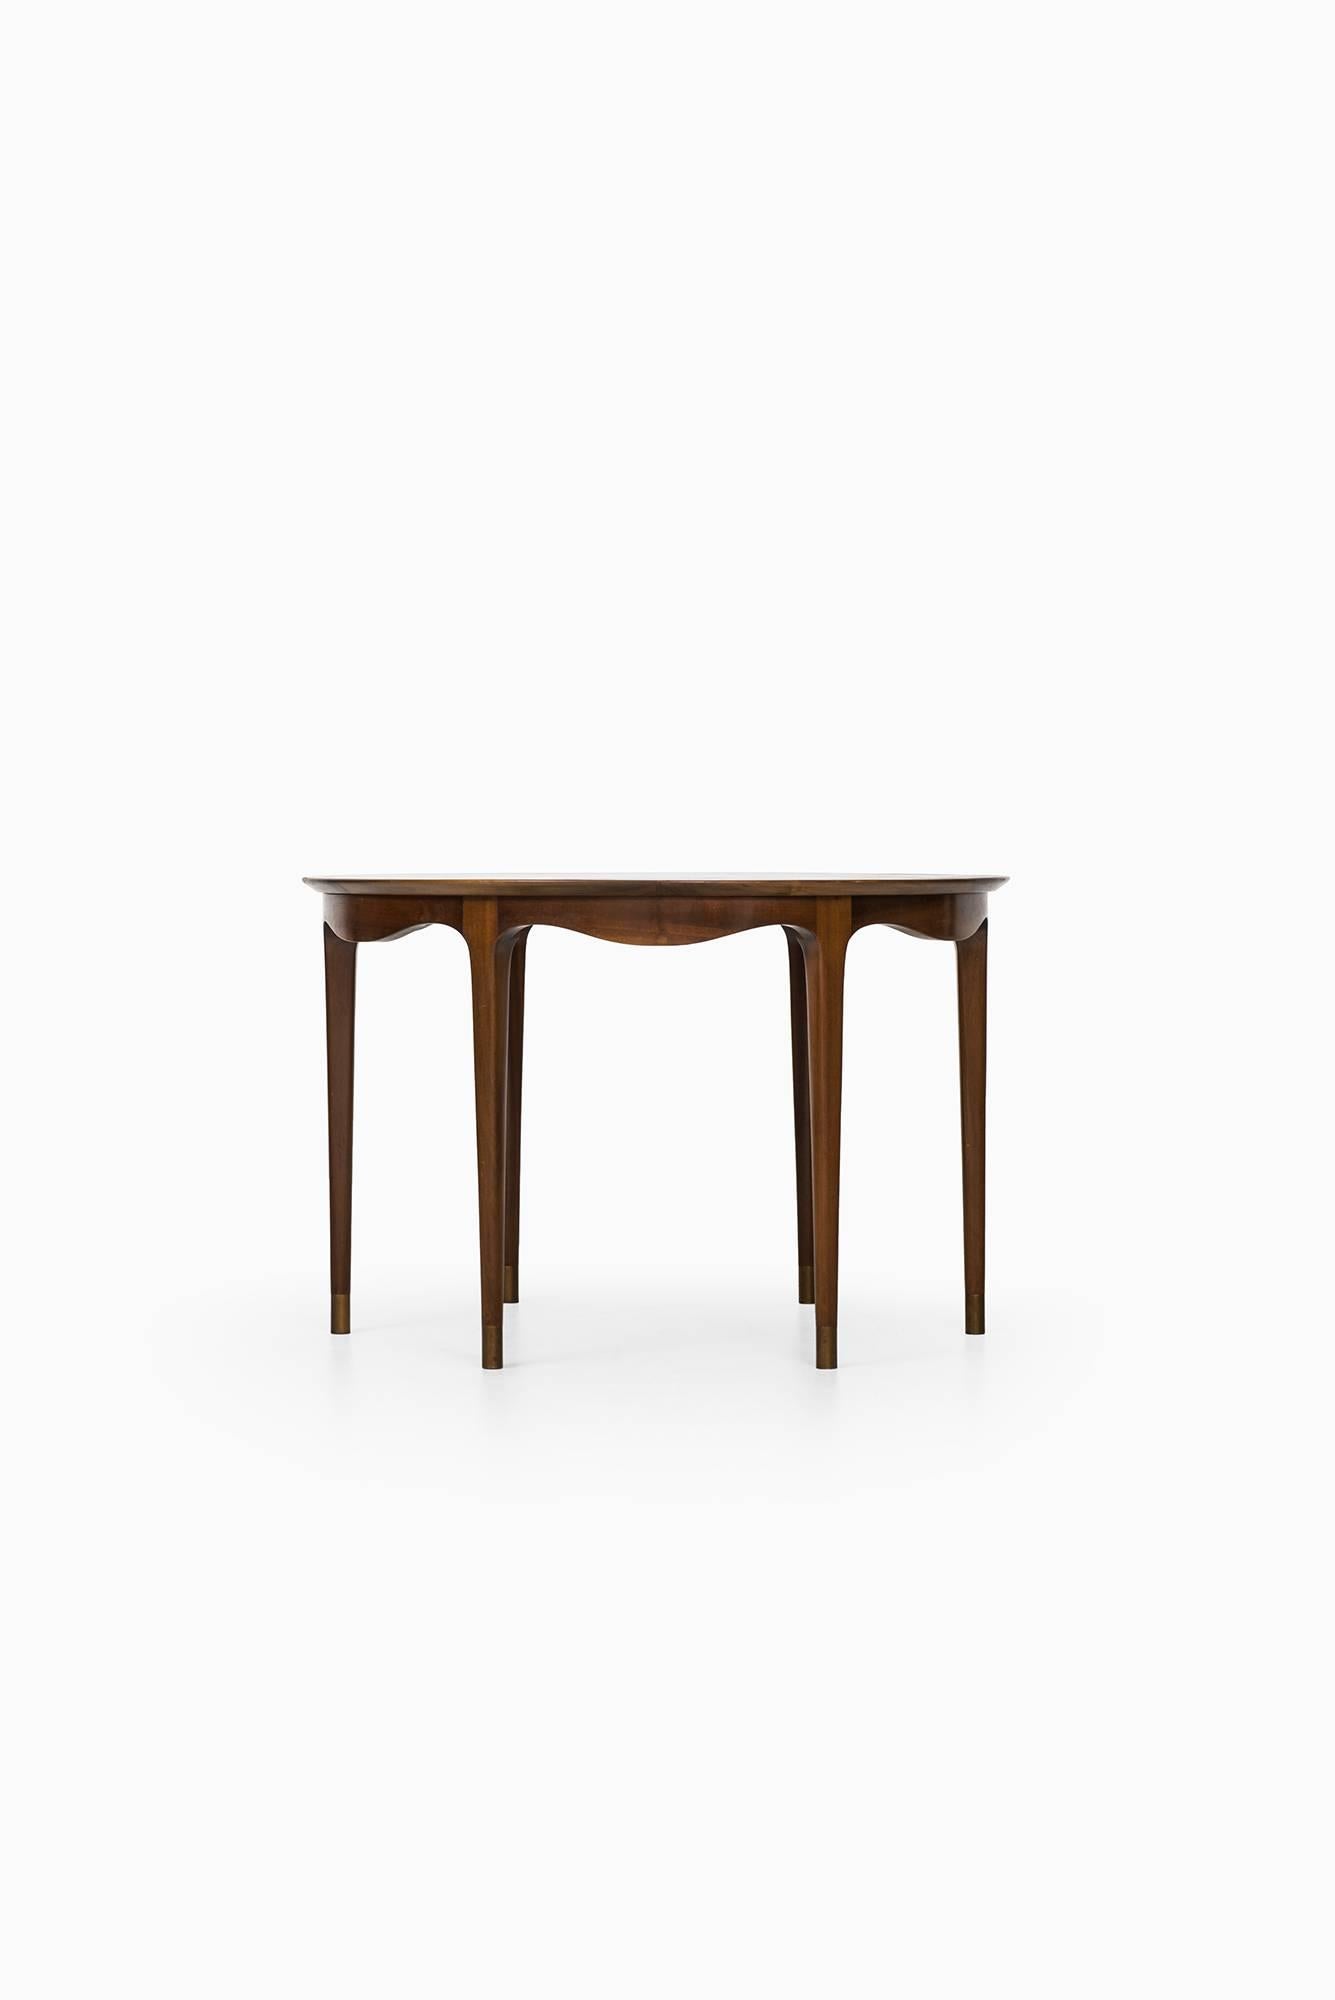 Scandinavian Modern Ole Wanscher Side Table by Cabinetmaker A.J. Iversen in Denmark